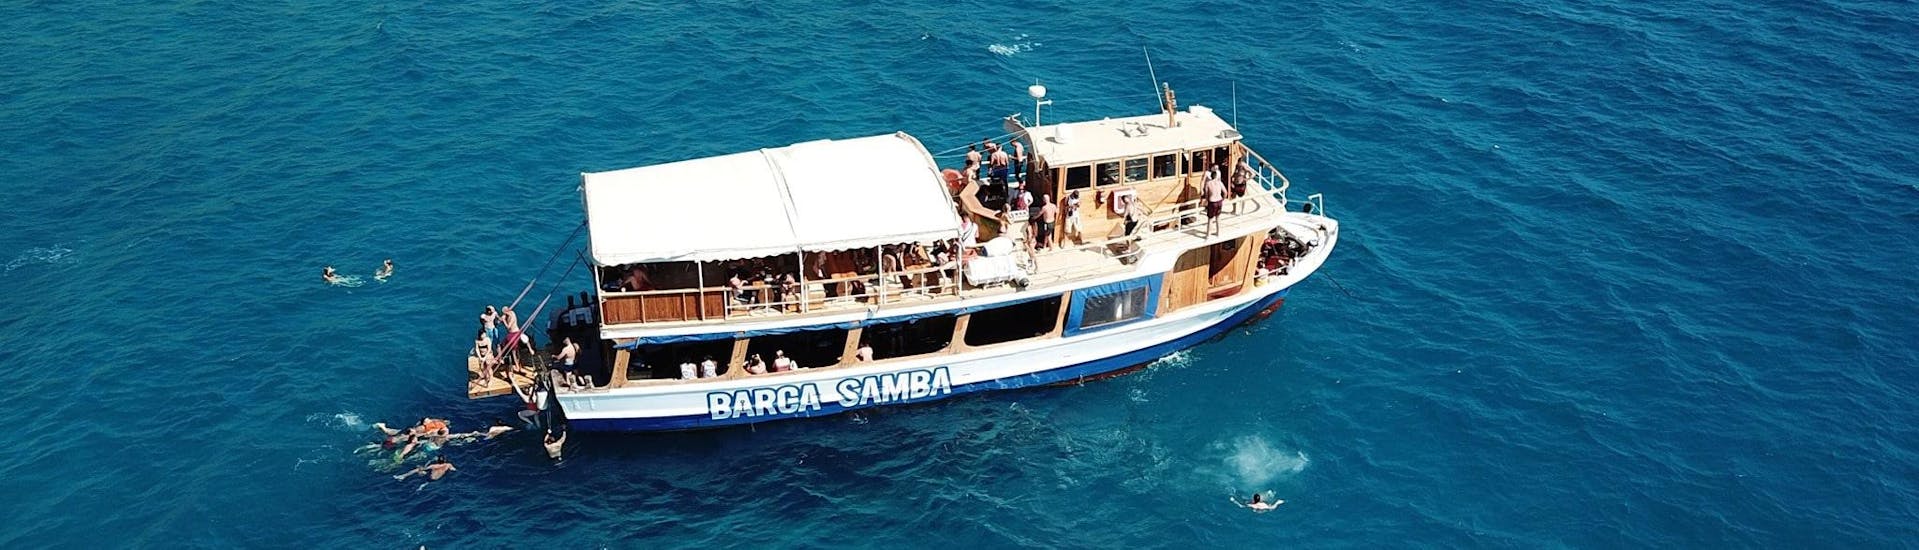 Un bateau fait une croisière autour de Palma de Majorque avec Barca Samba. 